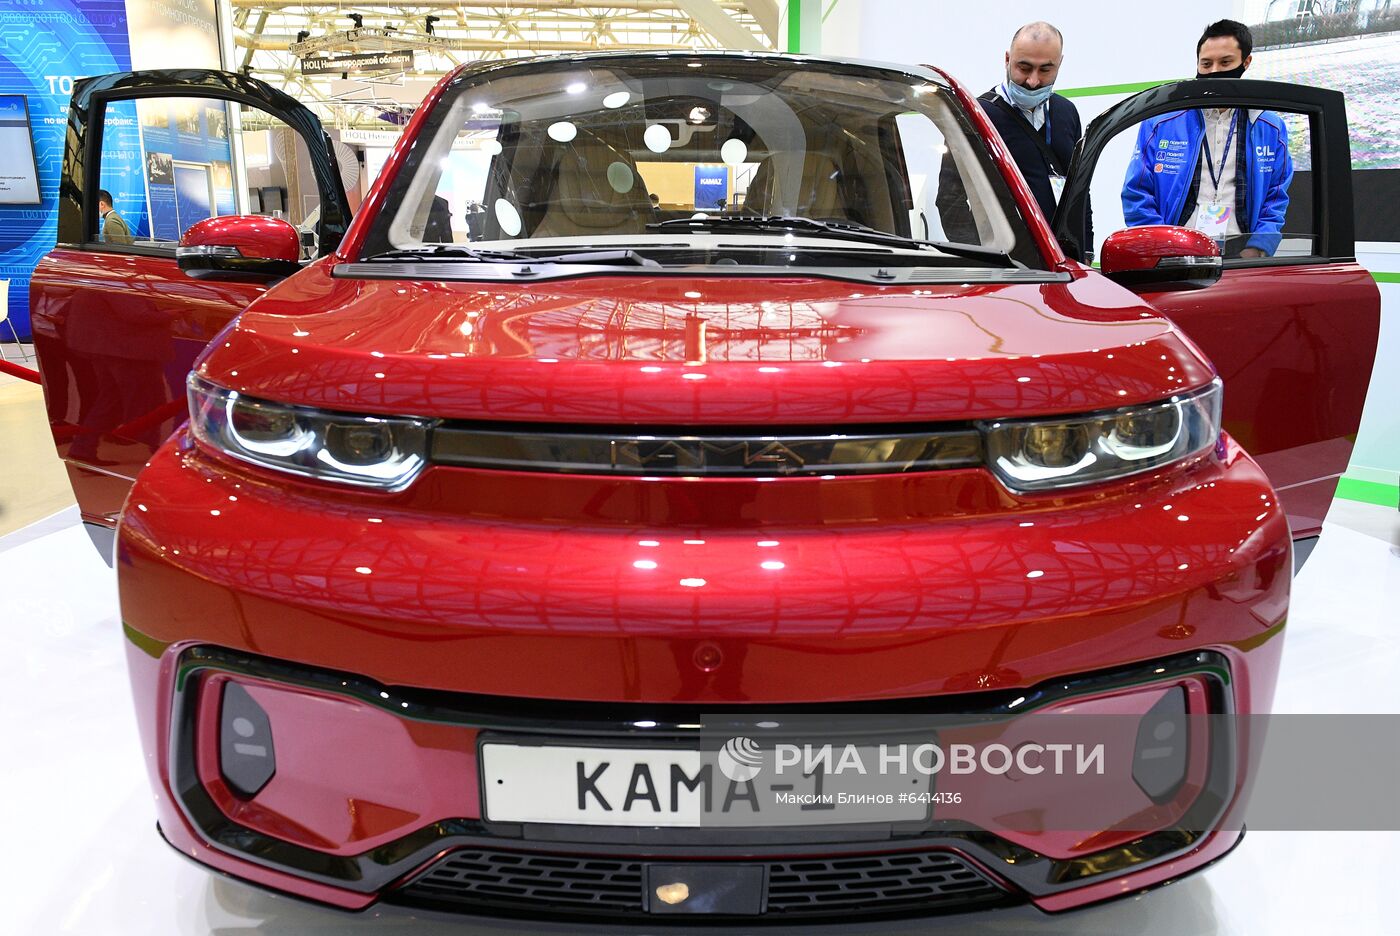 Электромобиль "Кама-1" представлен на выставке ВУЗПРОМЭКСПО 2020 в Москве